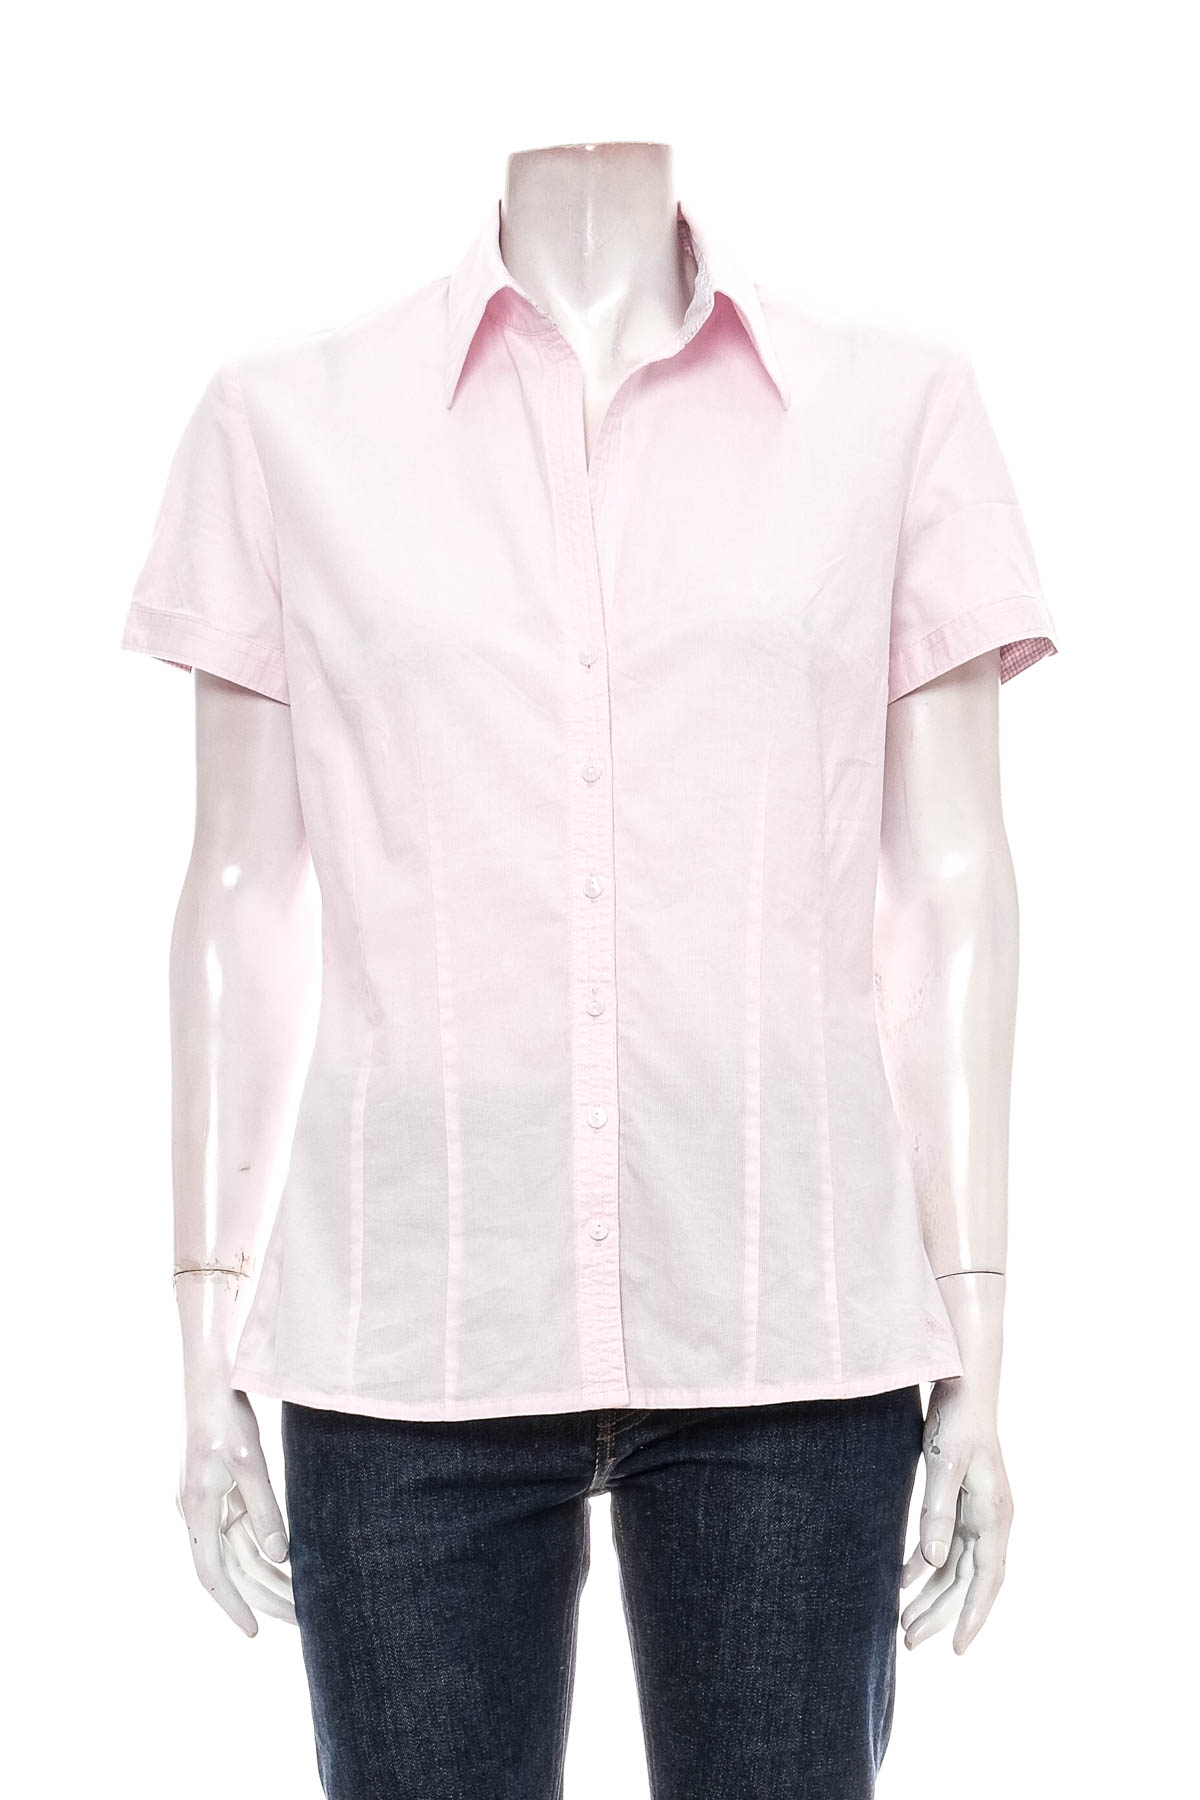 Γυναικείο πουκάμισο - S.Oliver - 0